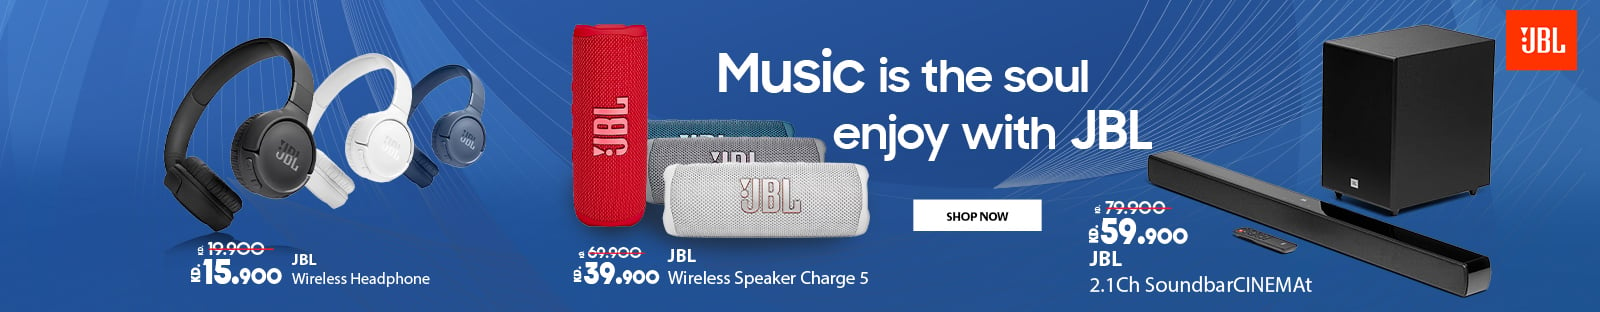 JBL Offer Banner